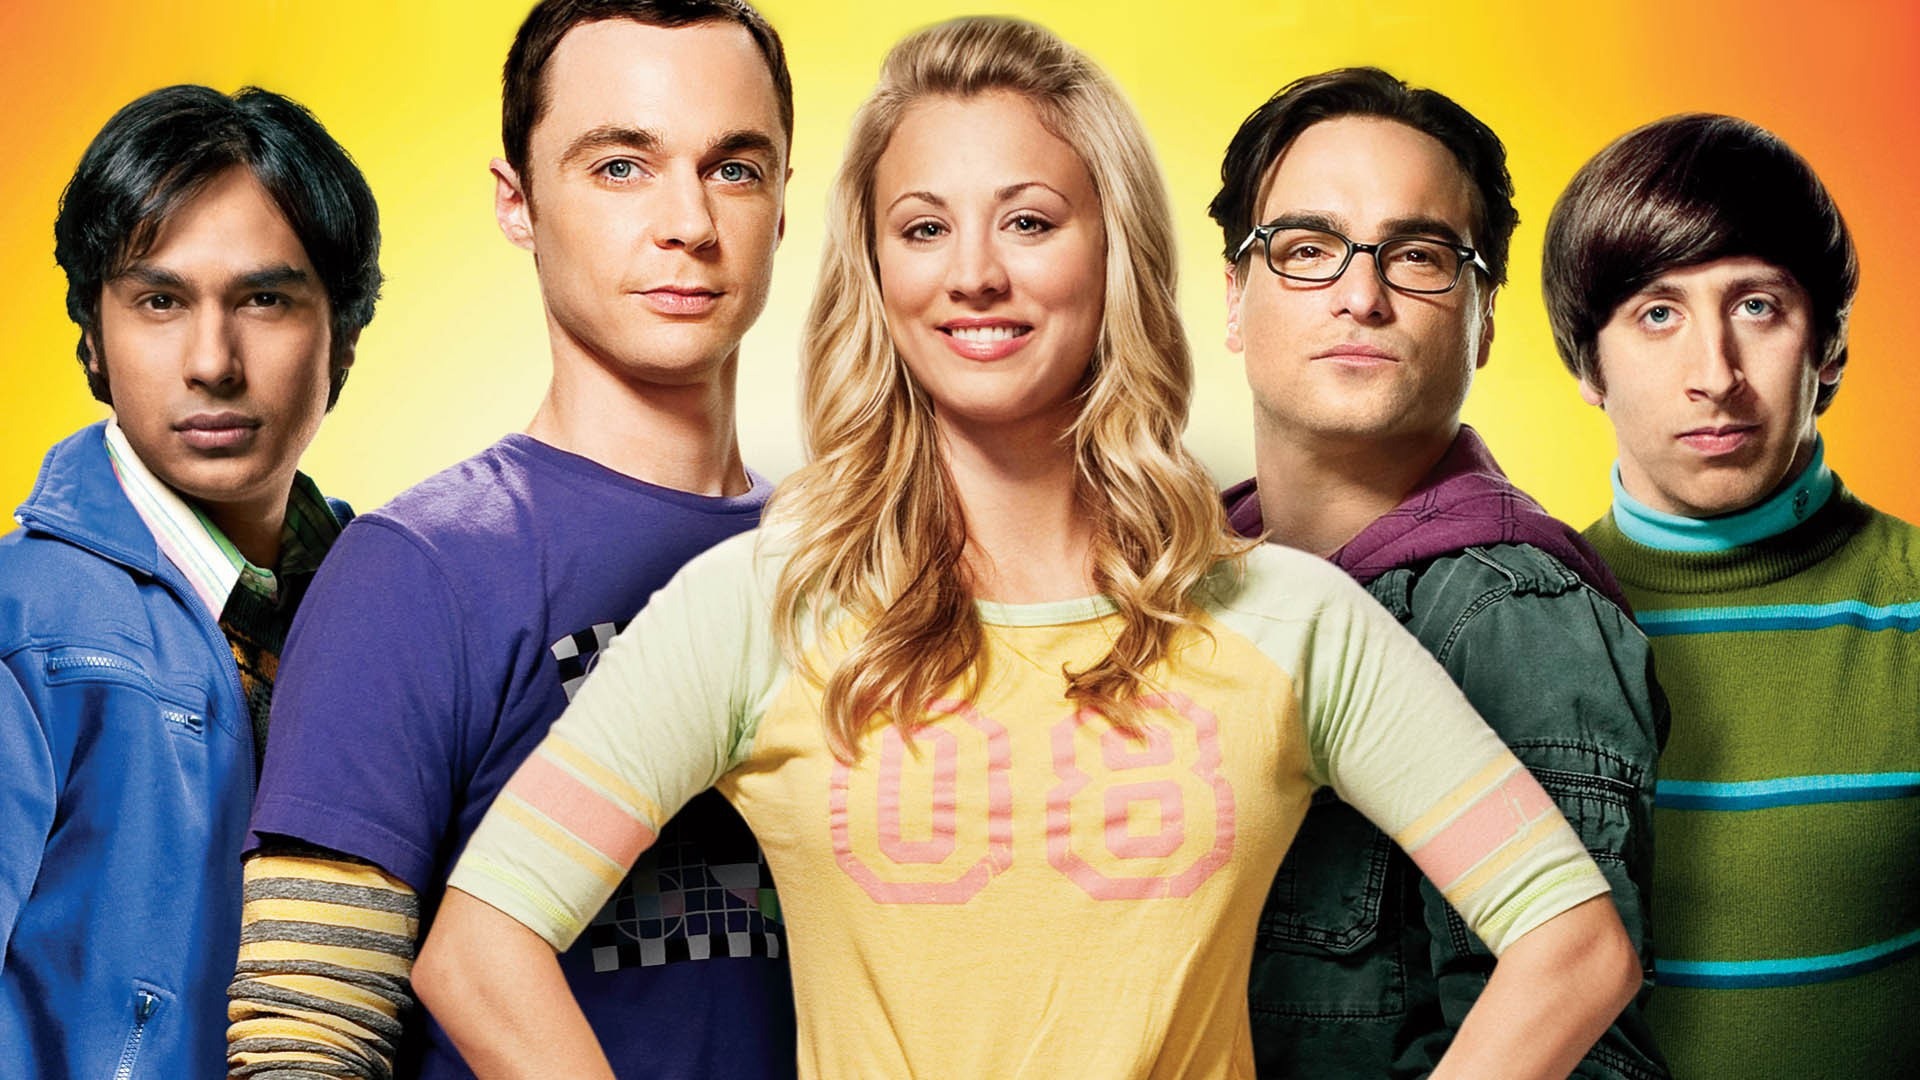 The Big Bang Theory 生活大爆炸 电视剧高清壁纸24 - 1920x1080